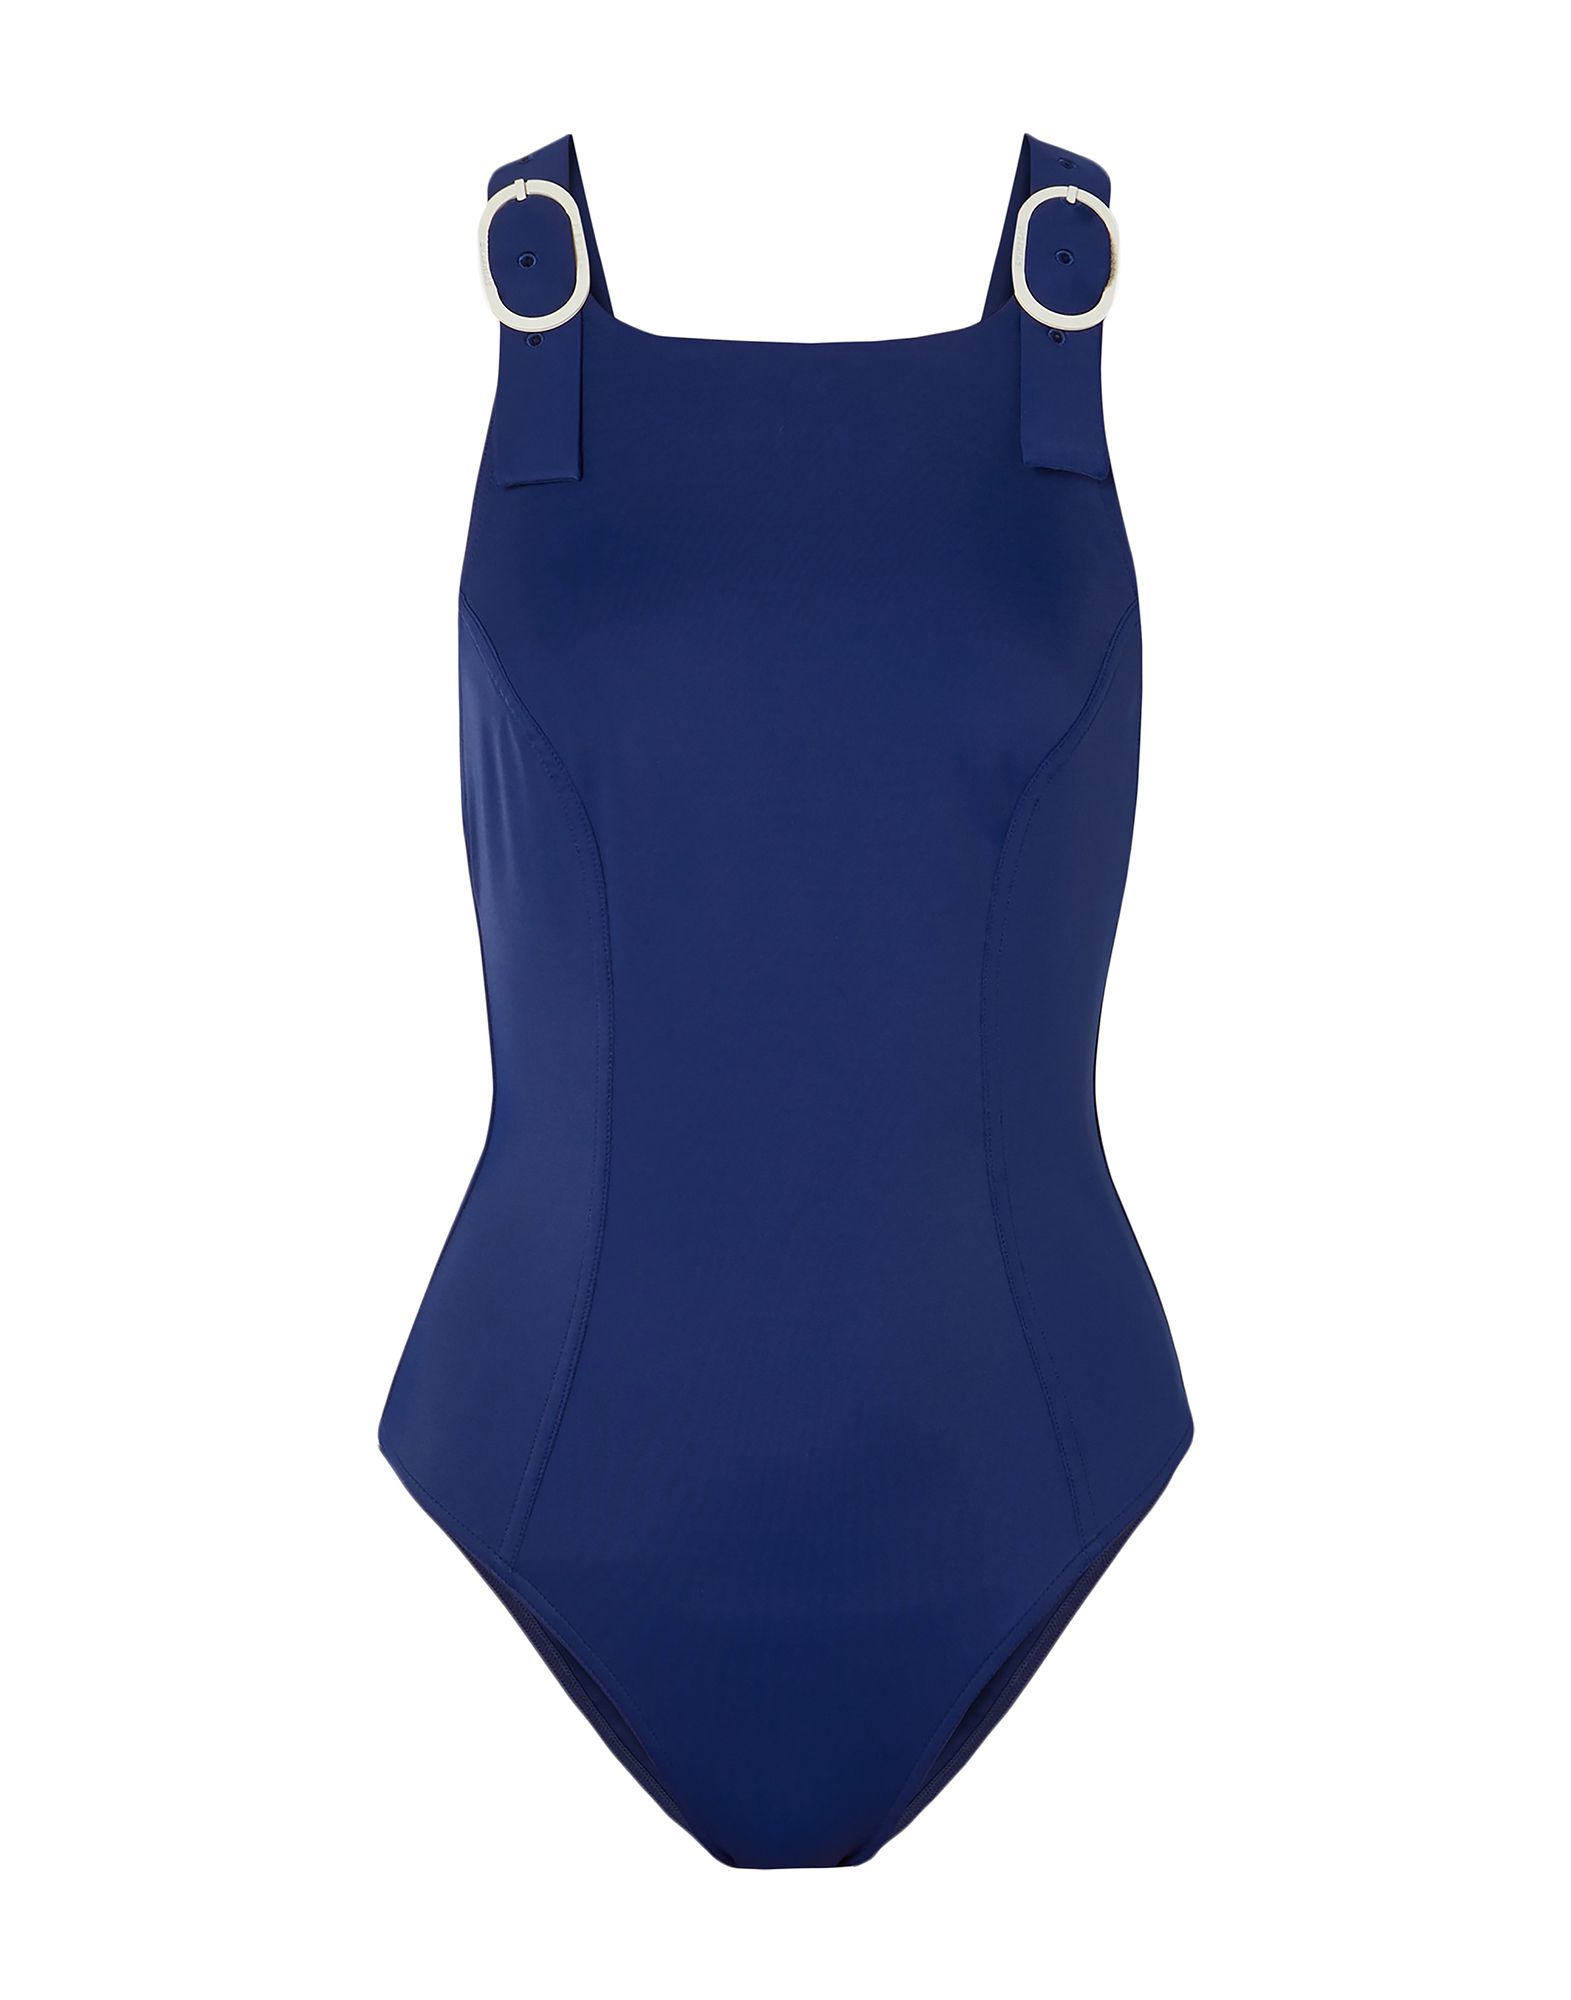 MEDINA SwimwearMEDINA Swimwear One-piece swimsuits | DailyMail